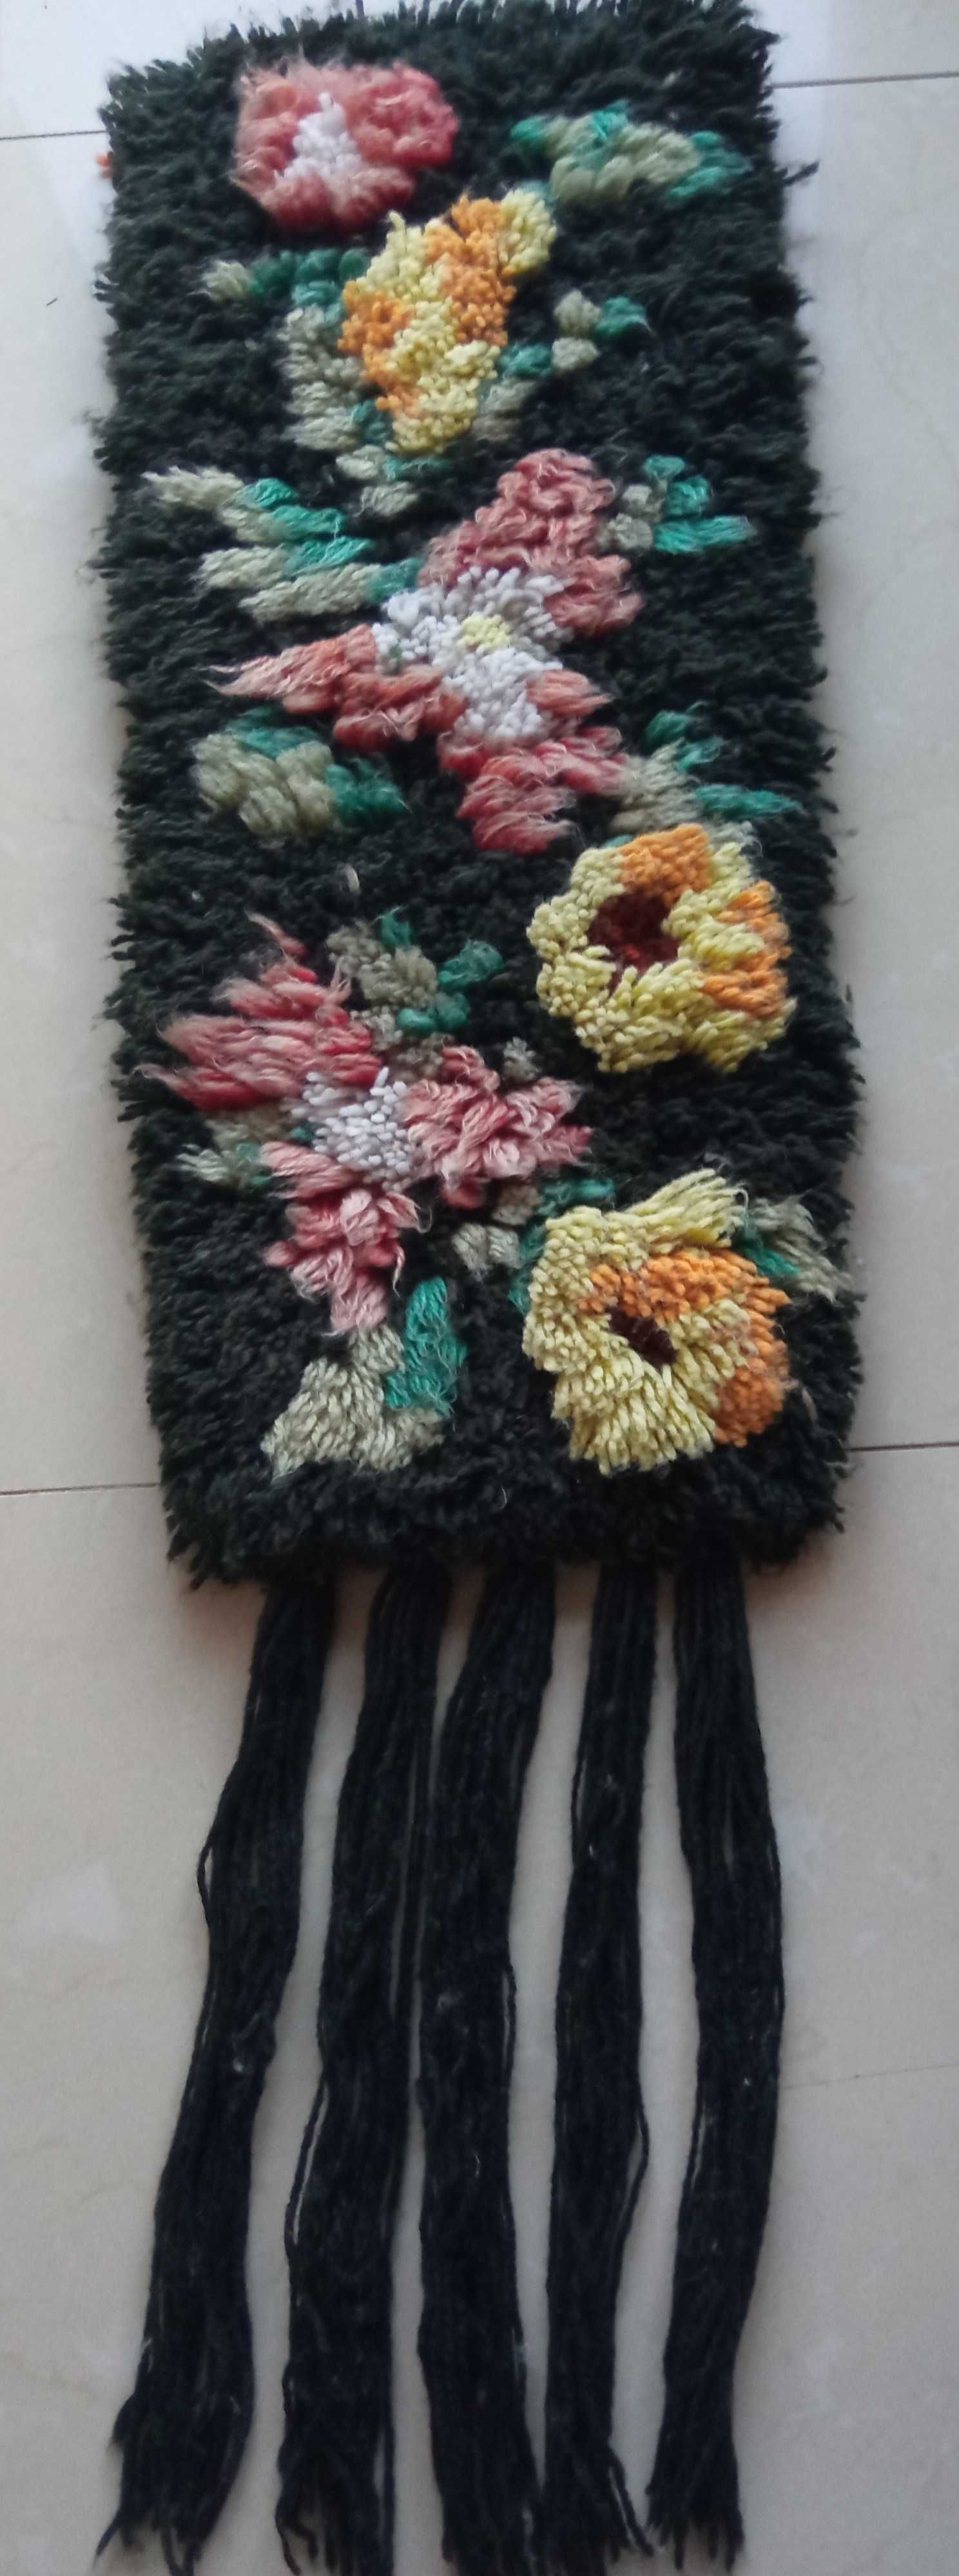 Cepelia PRL kilim makatka kwiaty wełna 26x65 cm + 40cm frędzle